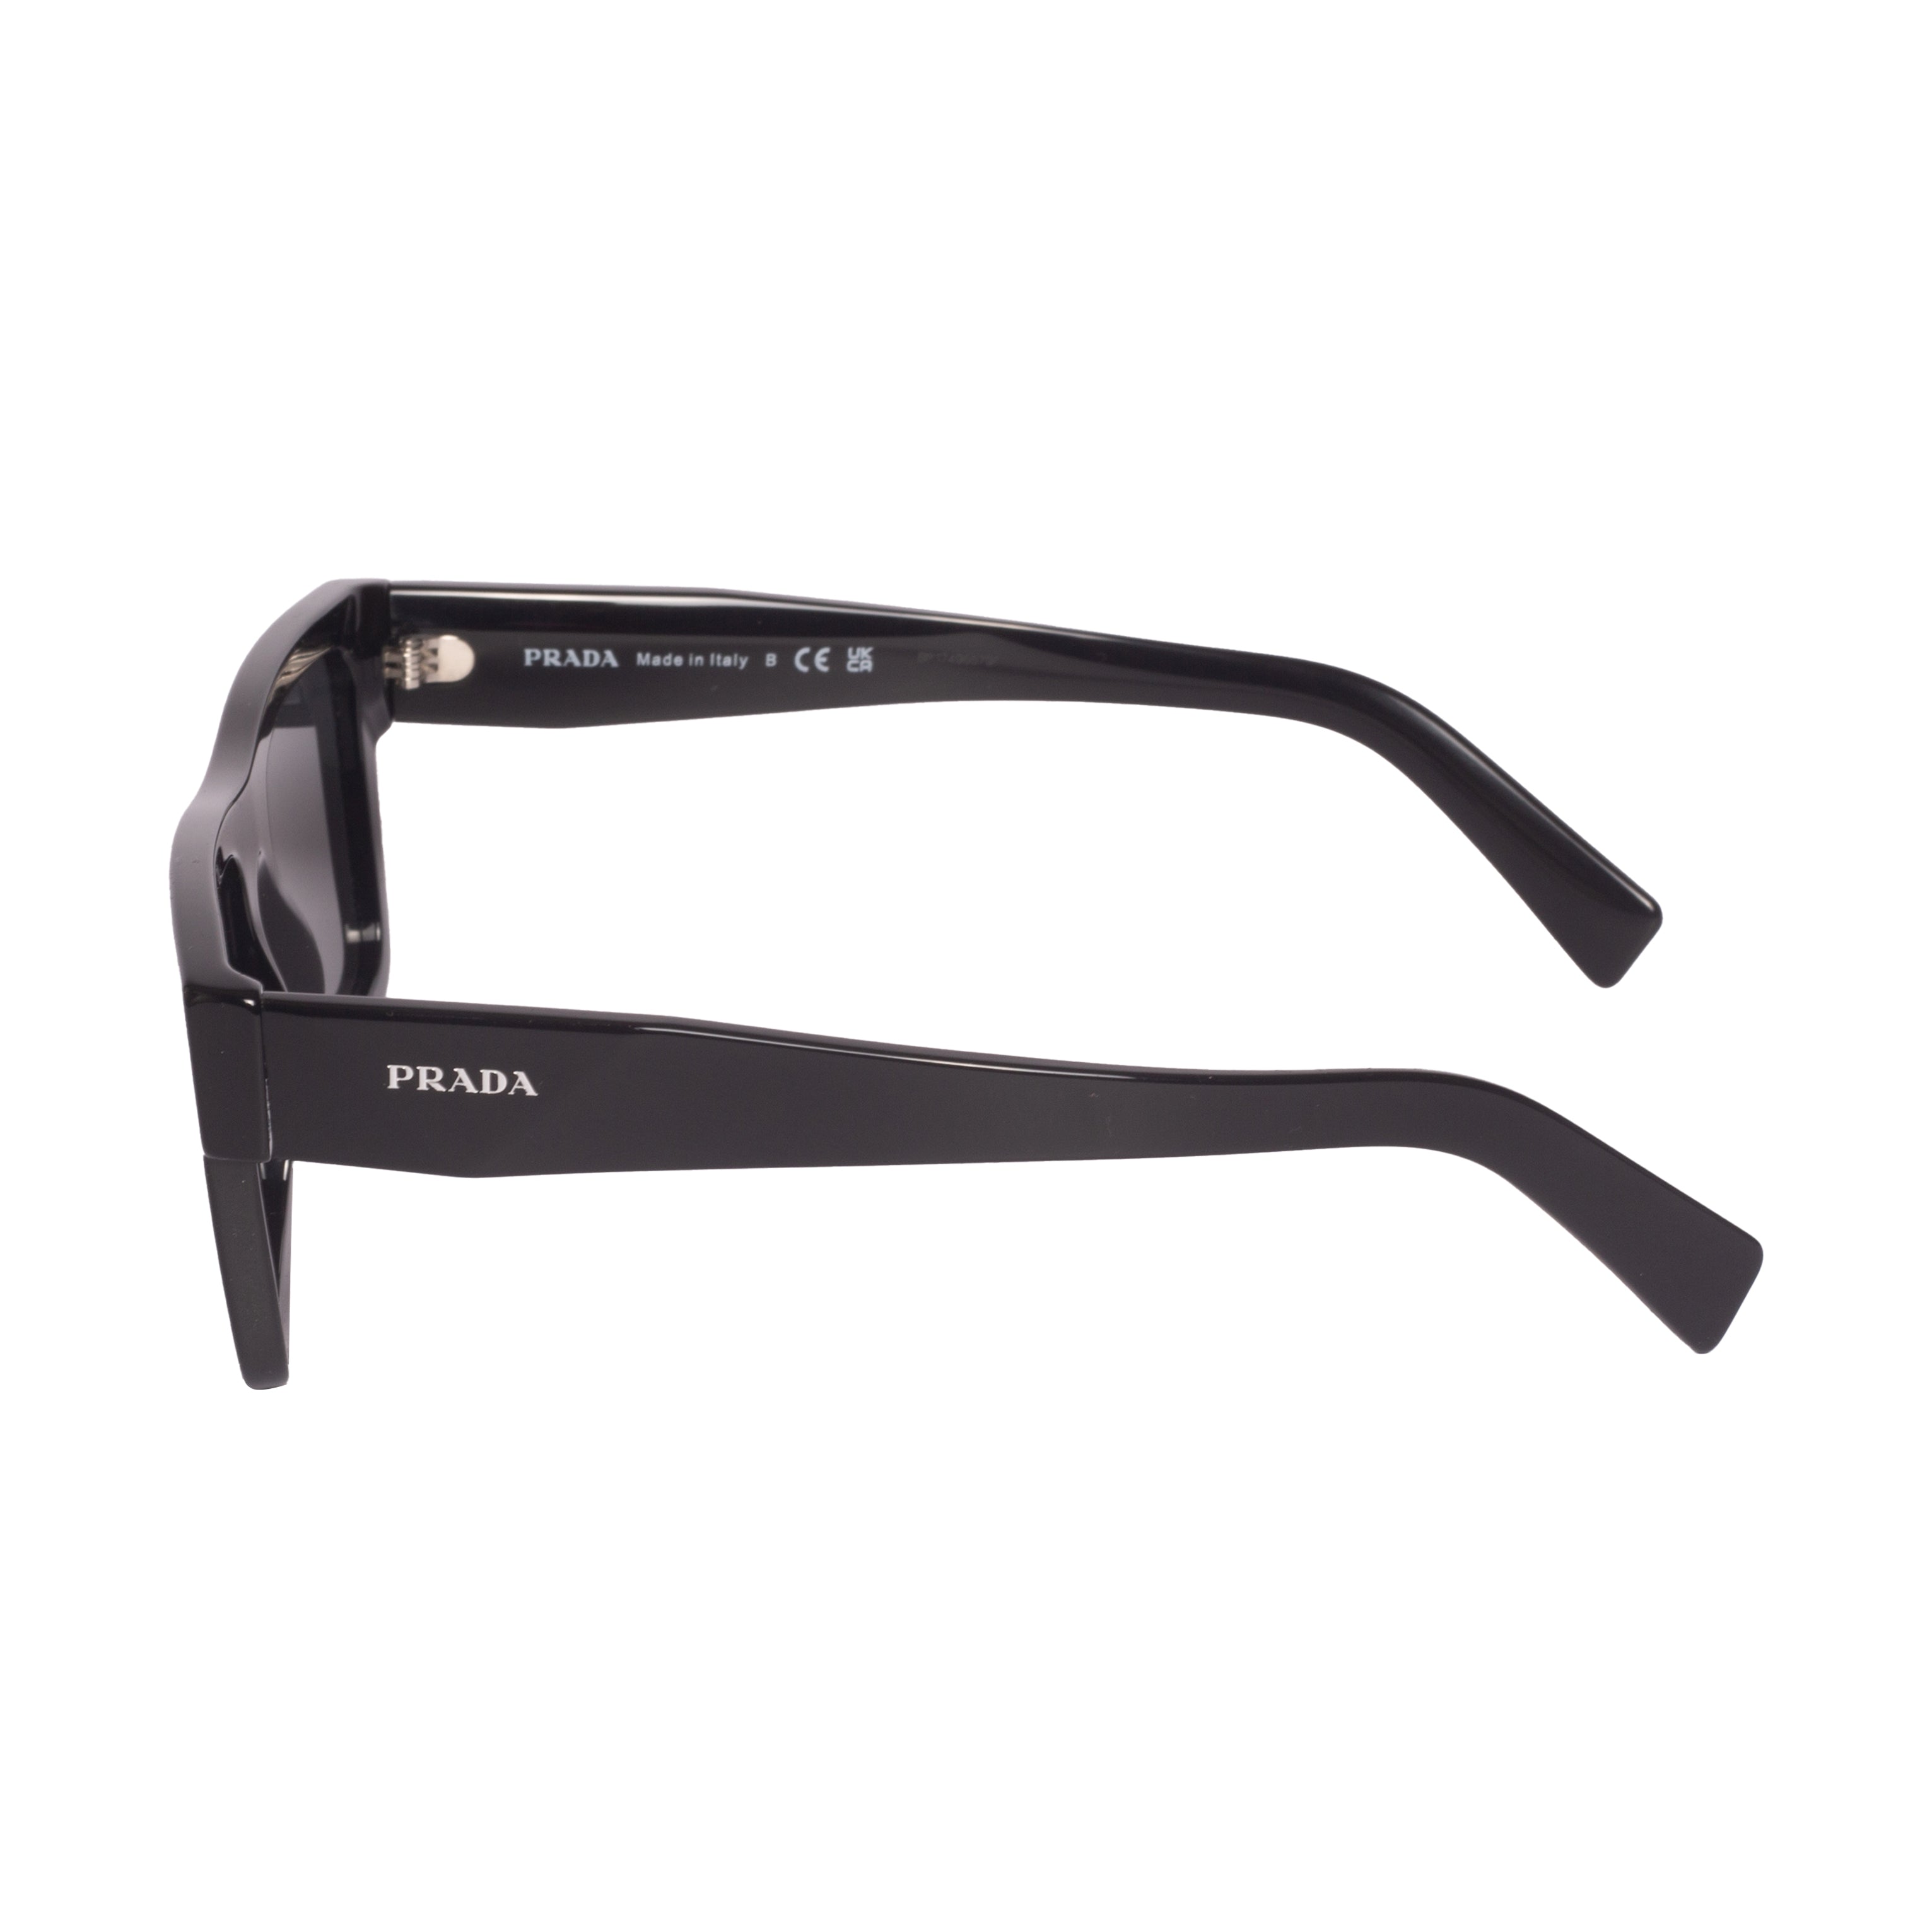 Prada-PR19WS-52-1AB5S0 Sunglasses - Premium Sunglasses from Prada - Just Rs. 36290! Shop now at Laxmi Opticians